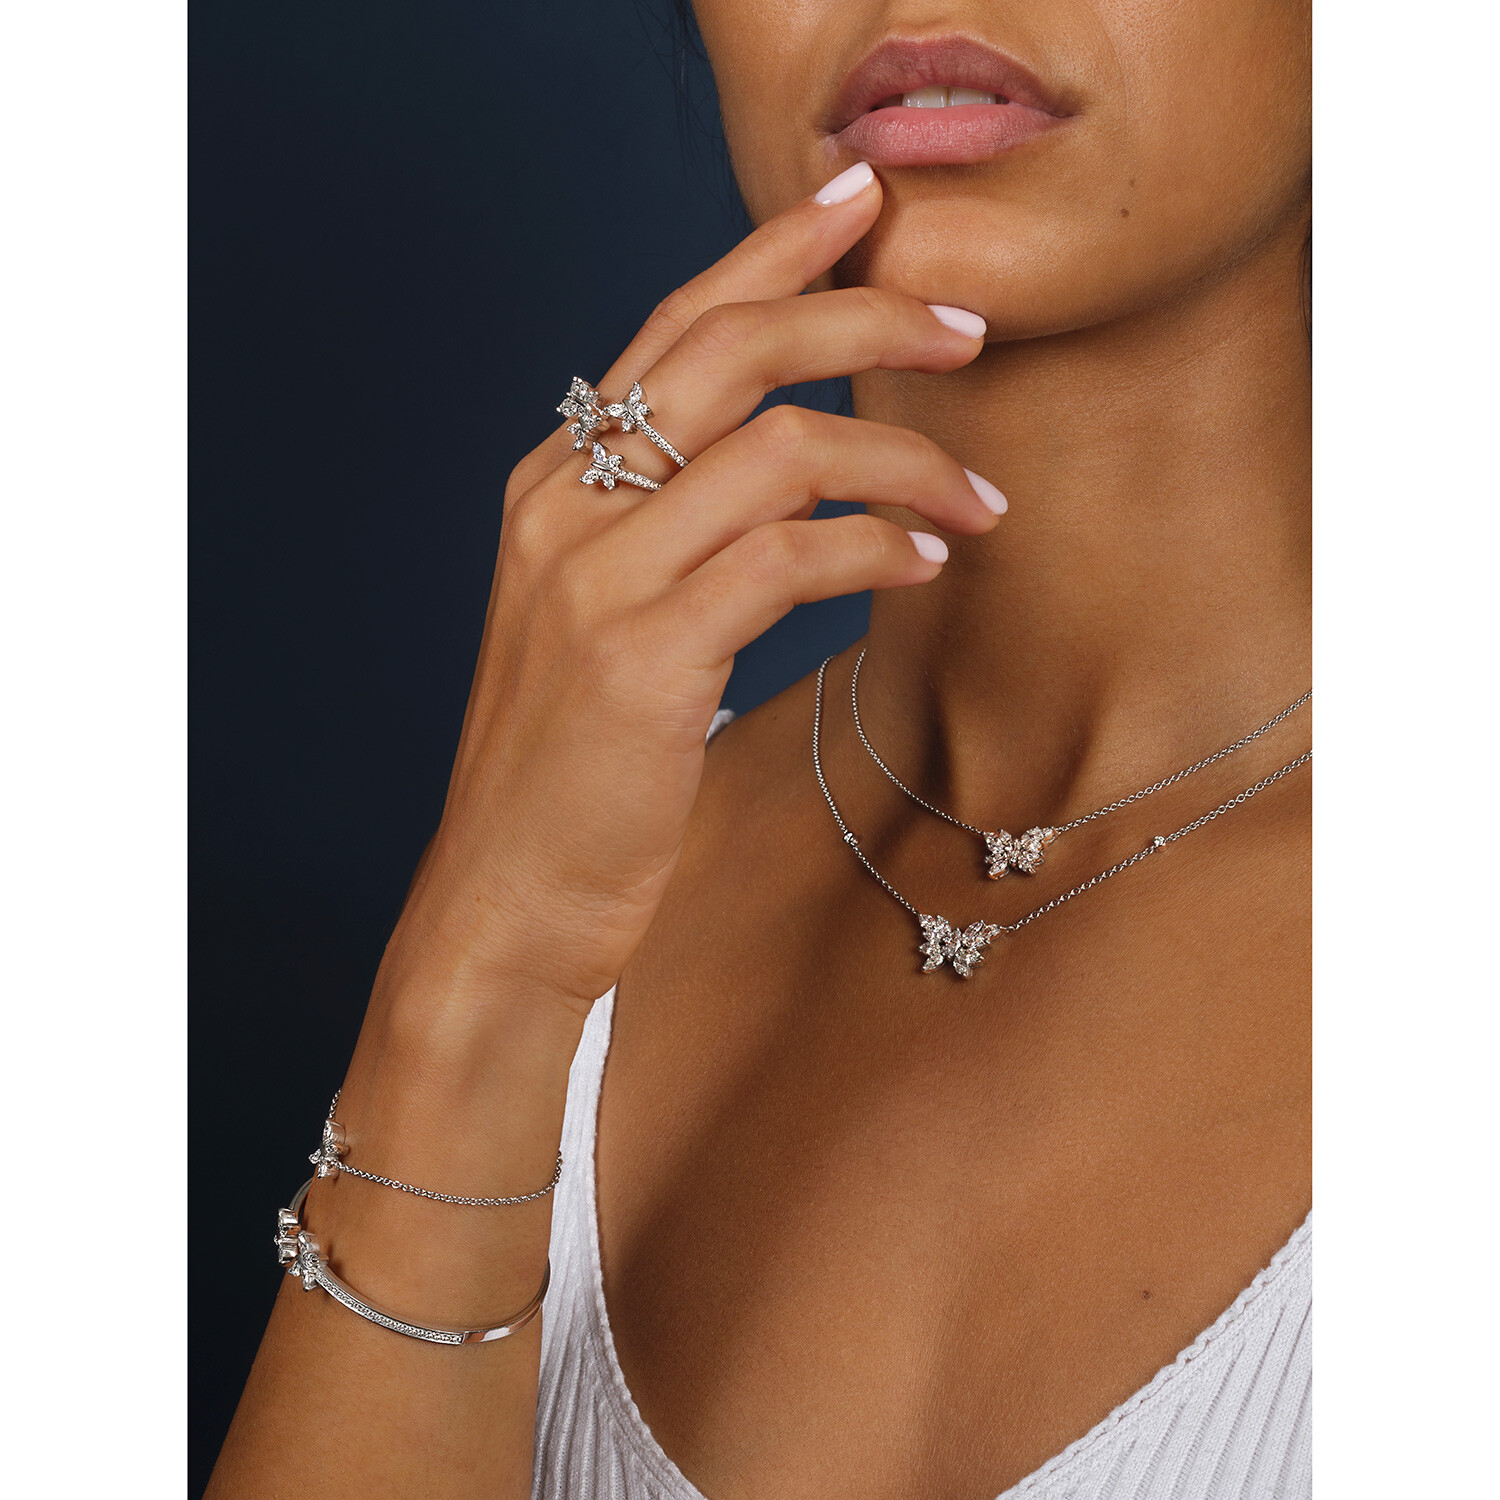 Bejeweled Butterfly|925 Sterling Silver Butterfly Charm Bracelet For Women  - Wedding Jewelry